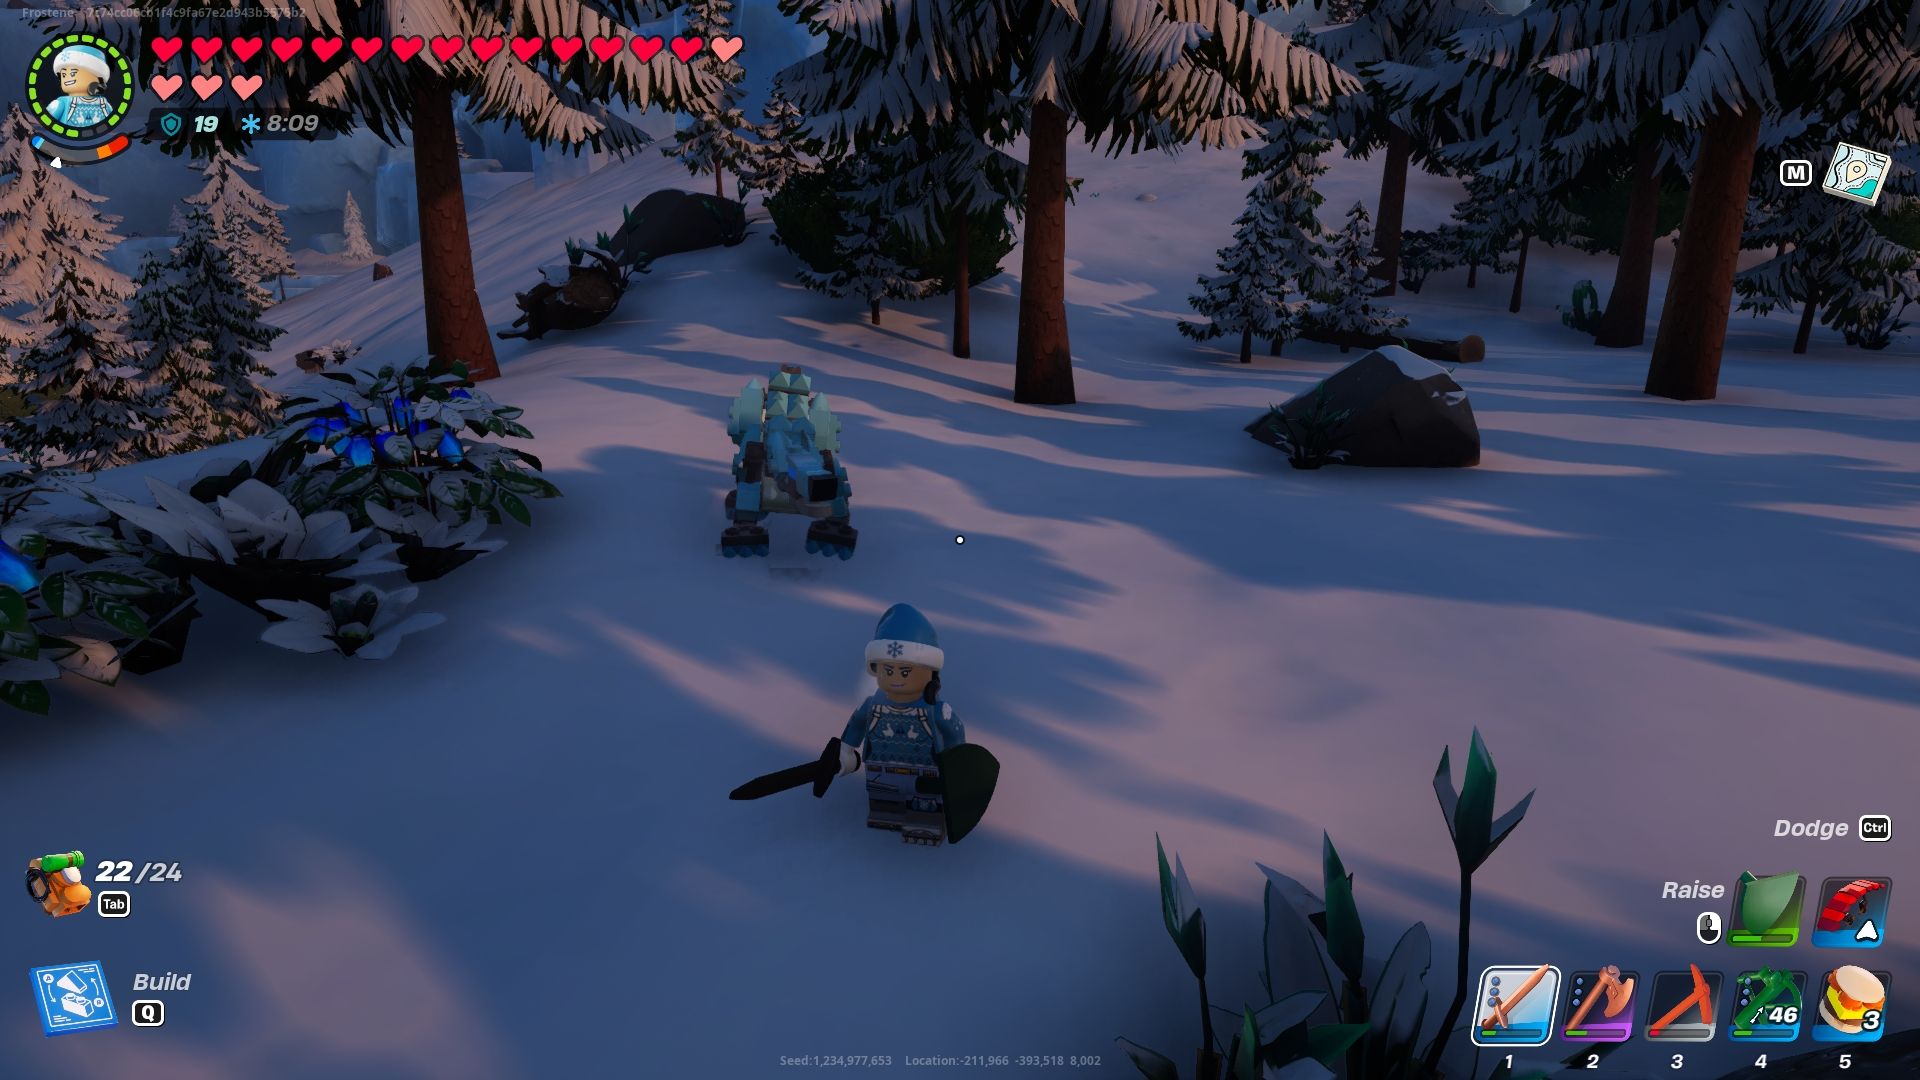 Аватар Lego Fortnite в заснеженном биоме с арктическим волком позади, готовым атаковать.